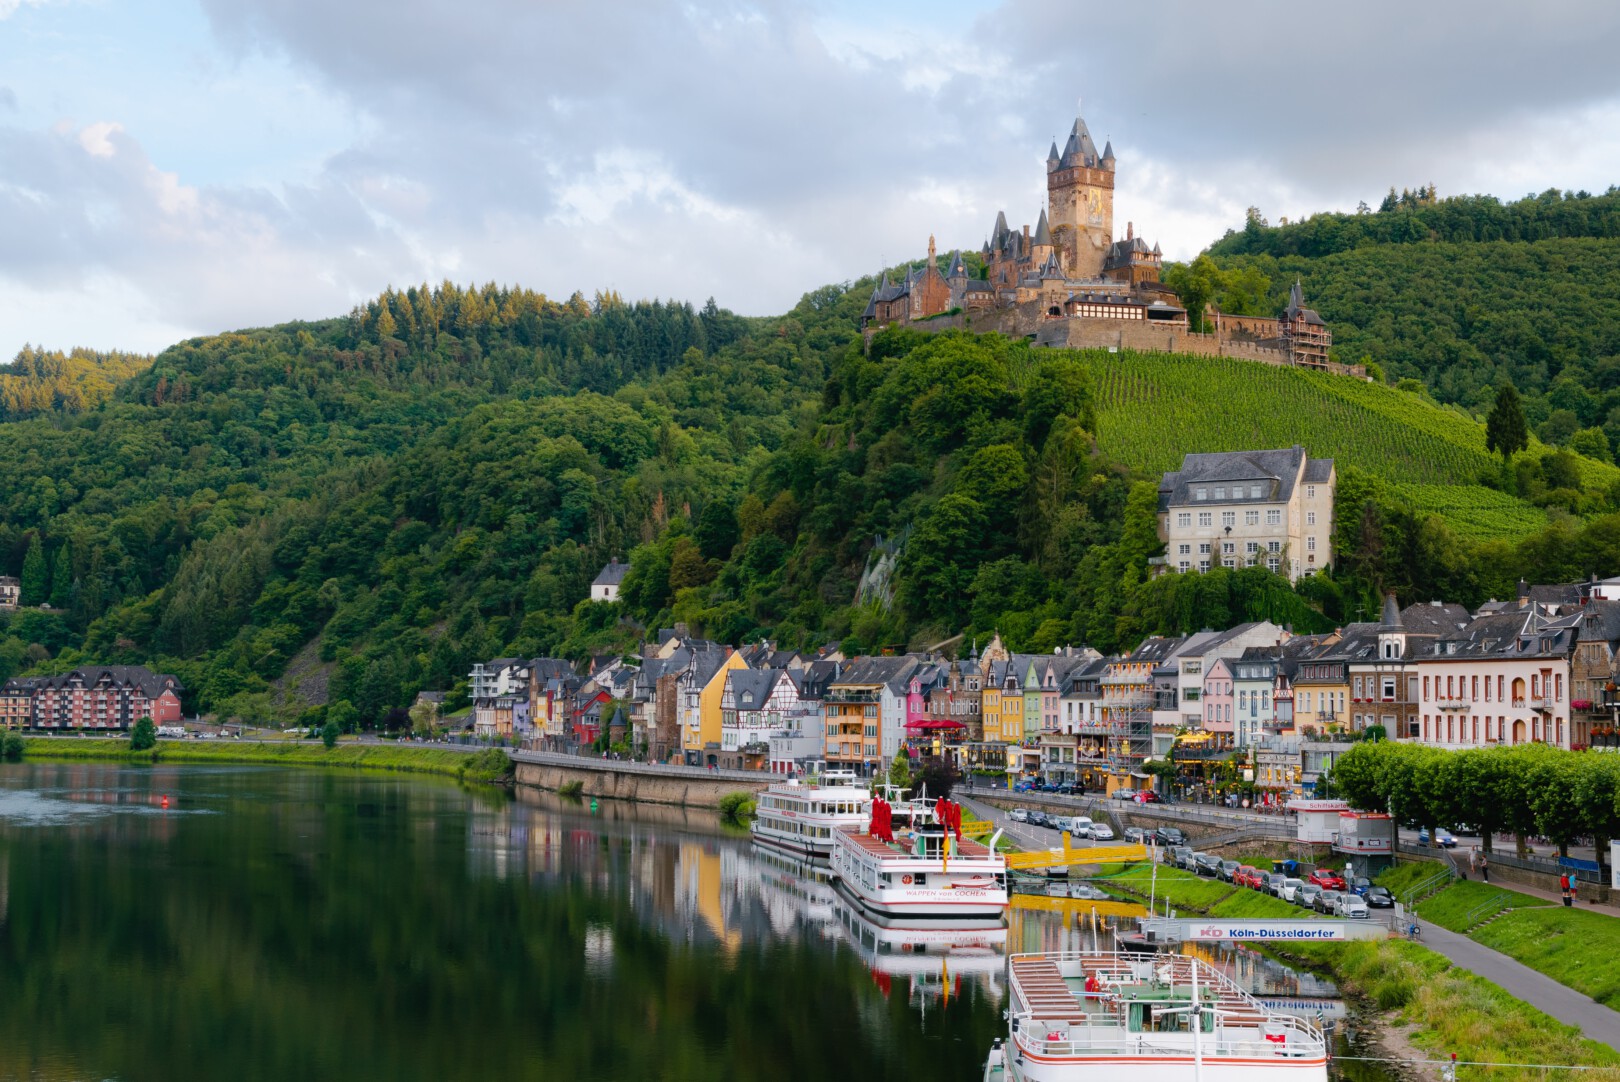 kai pilger uQBxh6L5D4 unsplash - Dit zijn de 12 leukste dorpjes en kleine stadjes in Duitsland om te bezoeken!